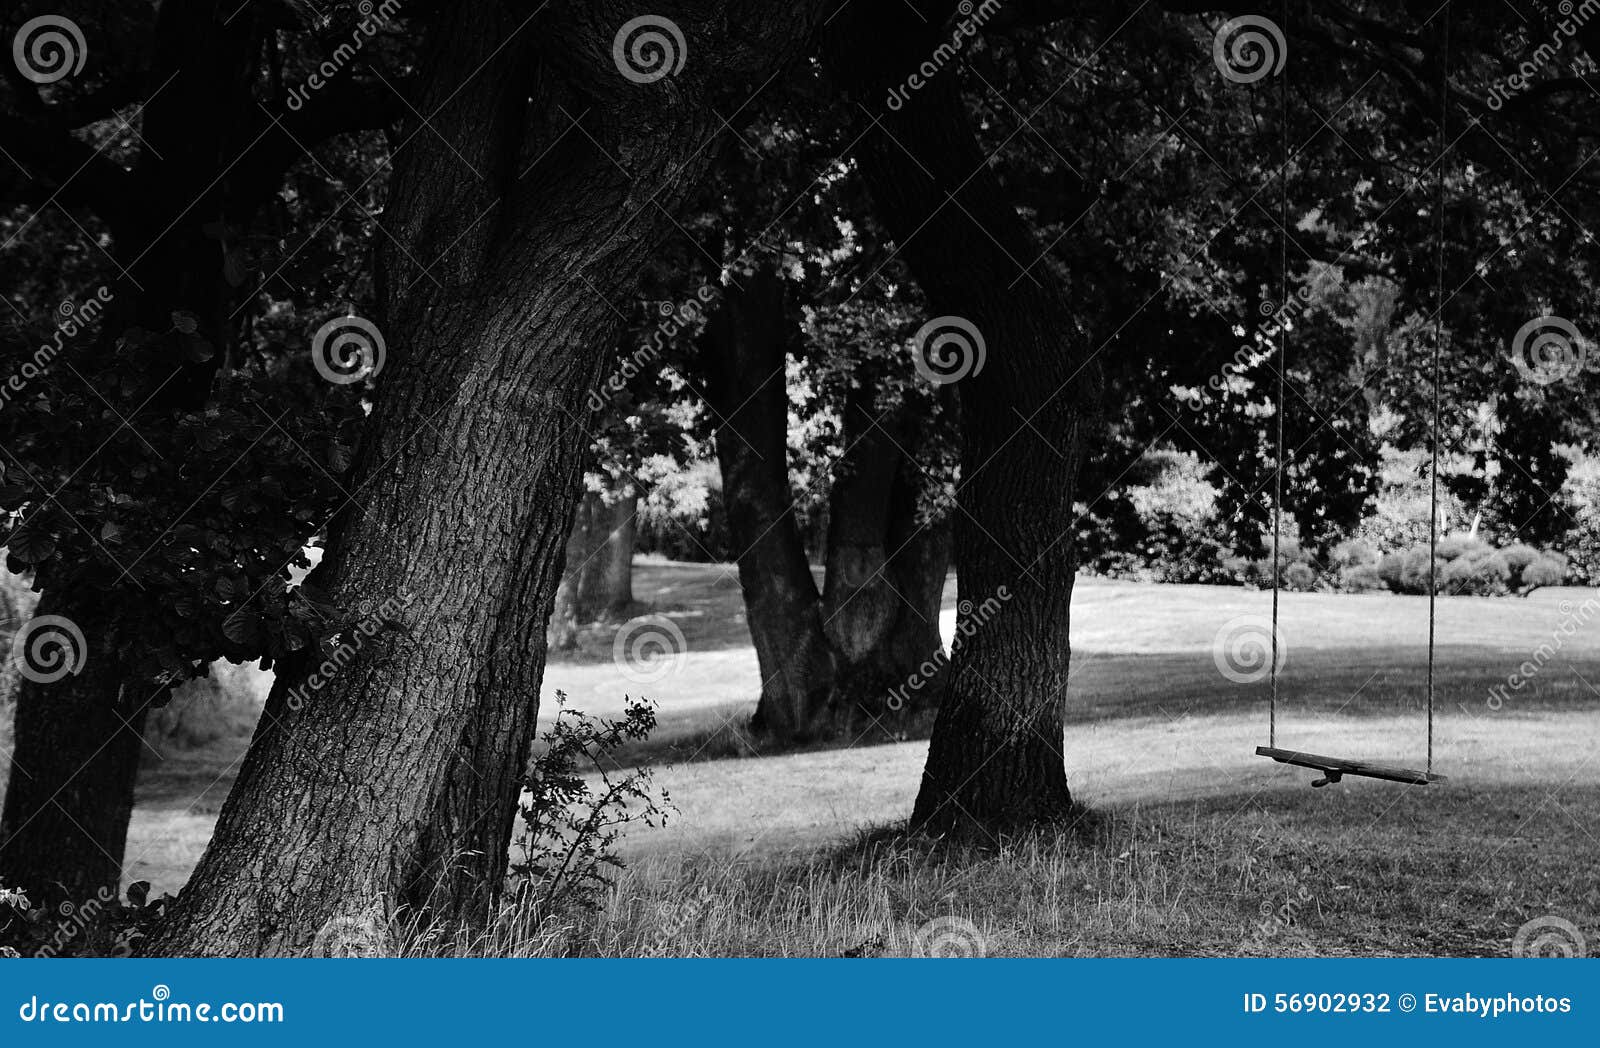 Schommeling in de bomen. Zwart-wit beeld van bebost gebied met het ouderwetse schommeling hangen van een boom en een licht die tussen de bomen vallen